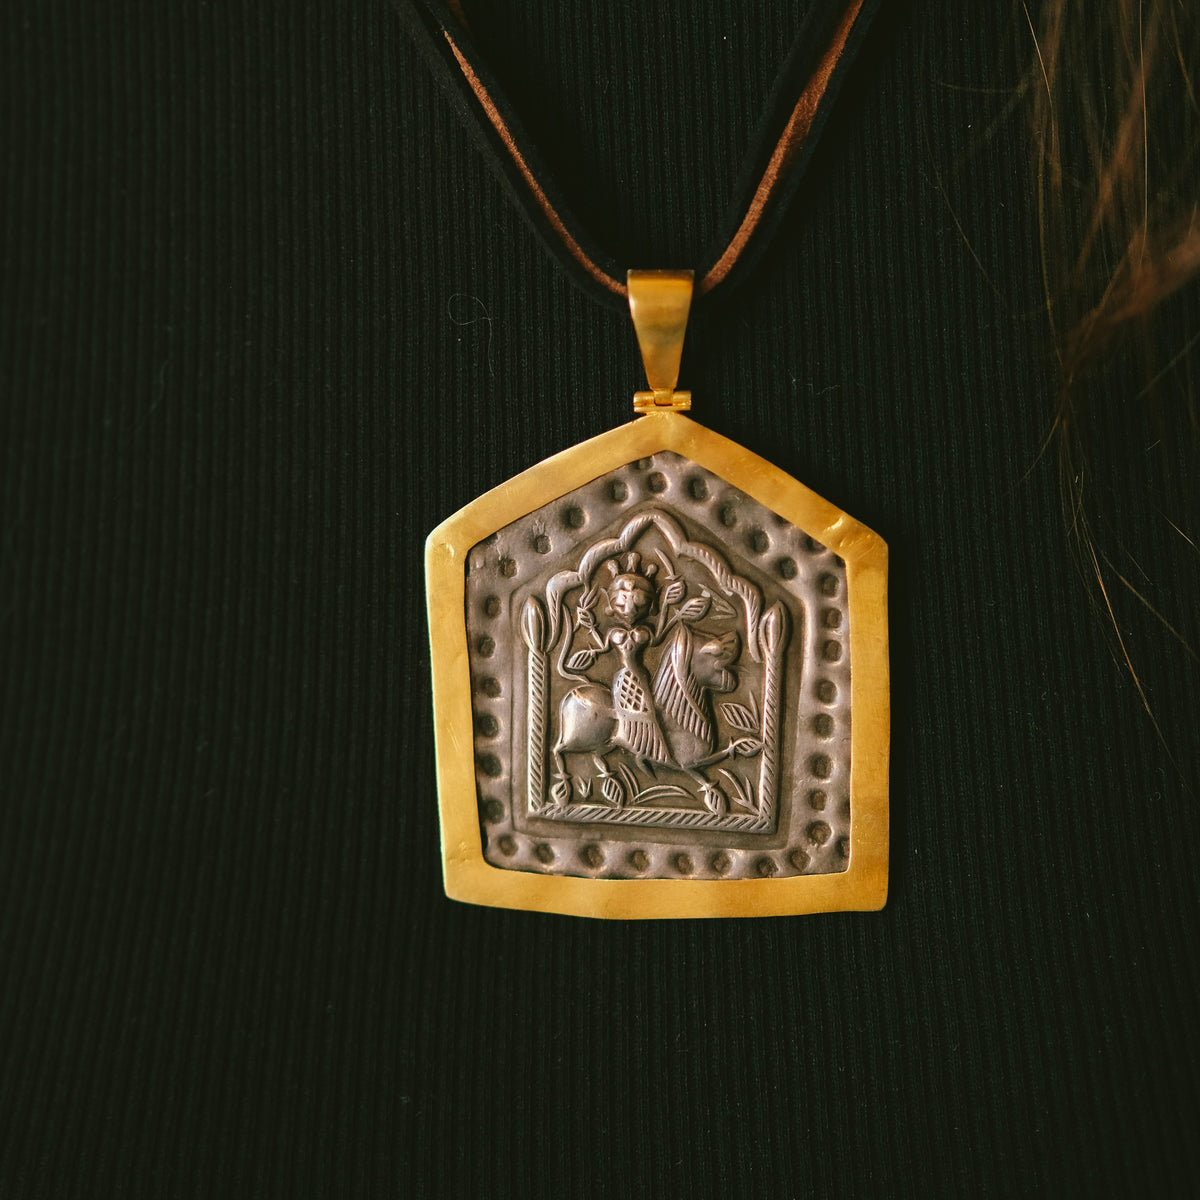 Antiguo amuleto en plata de India, representando a la diosa Durga montando sobre un león, enmarcado posteriormente en oro. Durga es la Diosa madre suprema del hinduismo, y fiera guerrera que protege al portador. Esta montado con 2 cueros y cierre de plata chapada. Originalmente lo usan hombres y mujeres por igual, colgando de un simple cordón. Medidas del colgante 7´5x 5 cm. Peso 23 g. Old silver amulet framed in gold from India. Durga amulet.